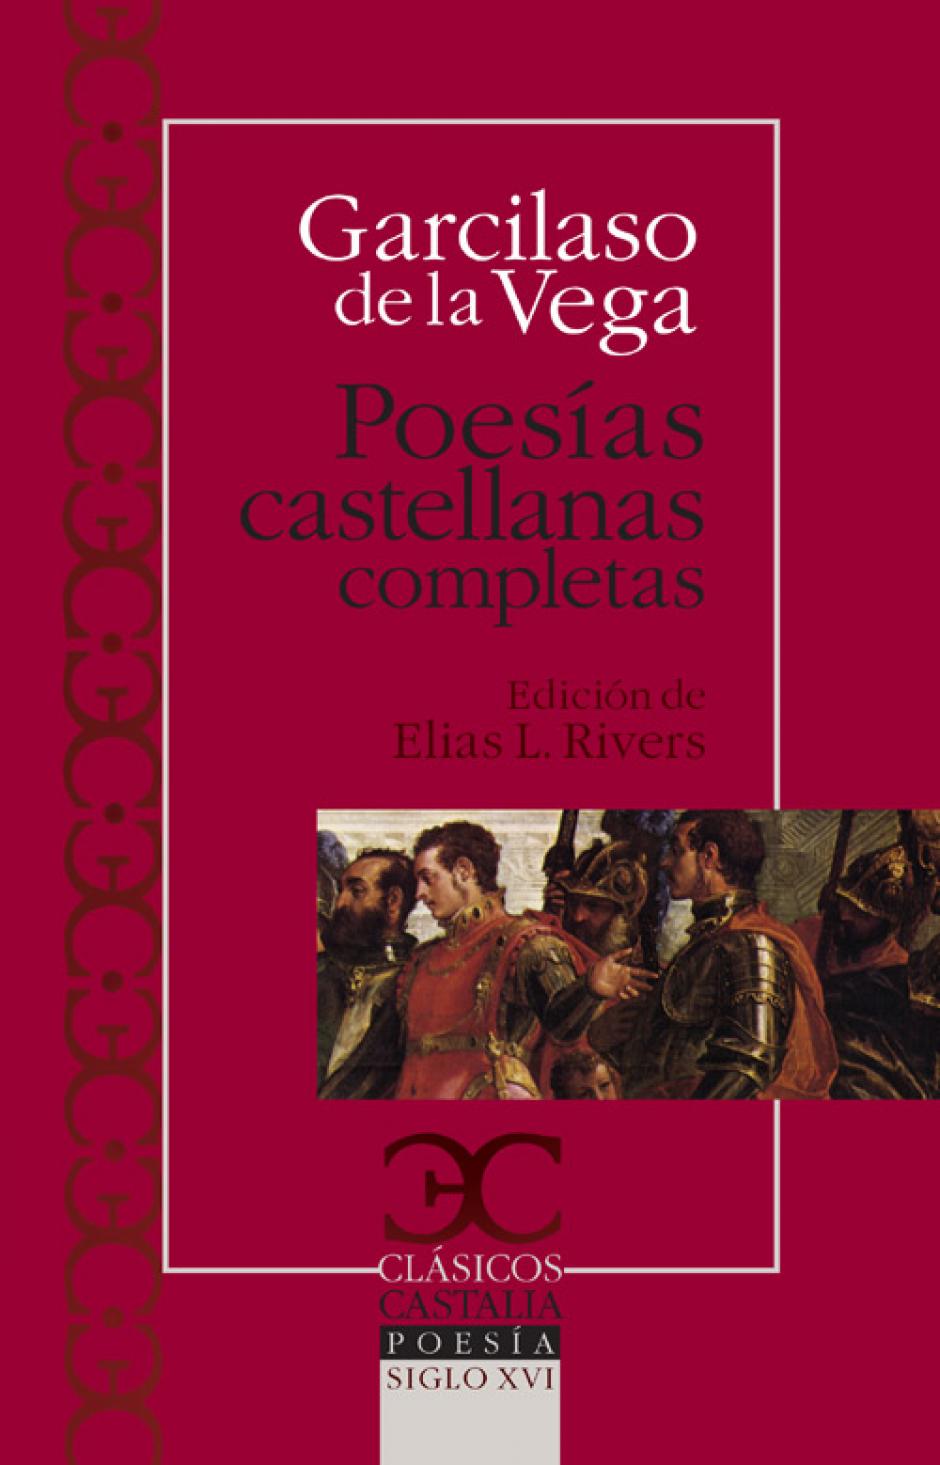 «Poesías castellanas completas» de Garcilaso de la Vega